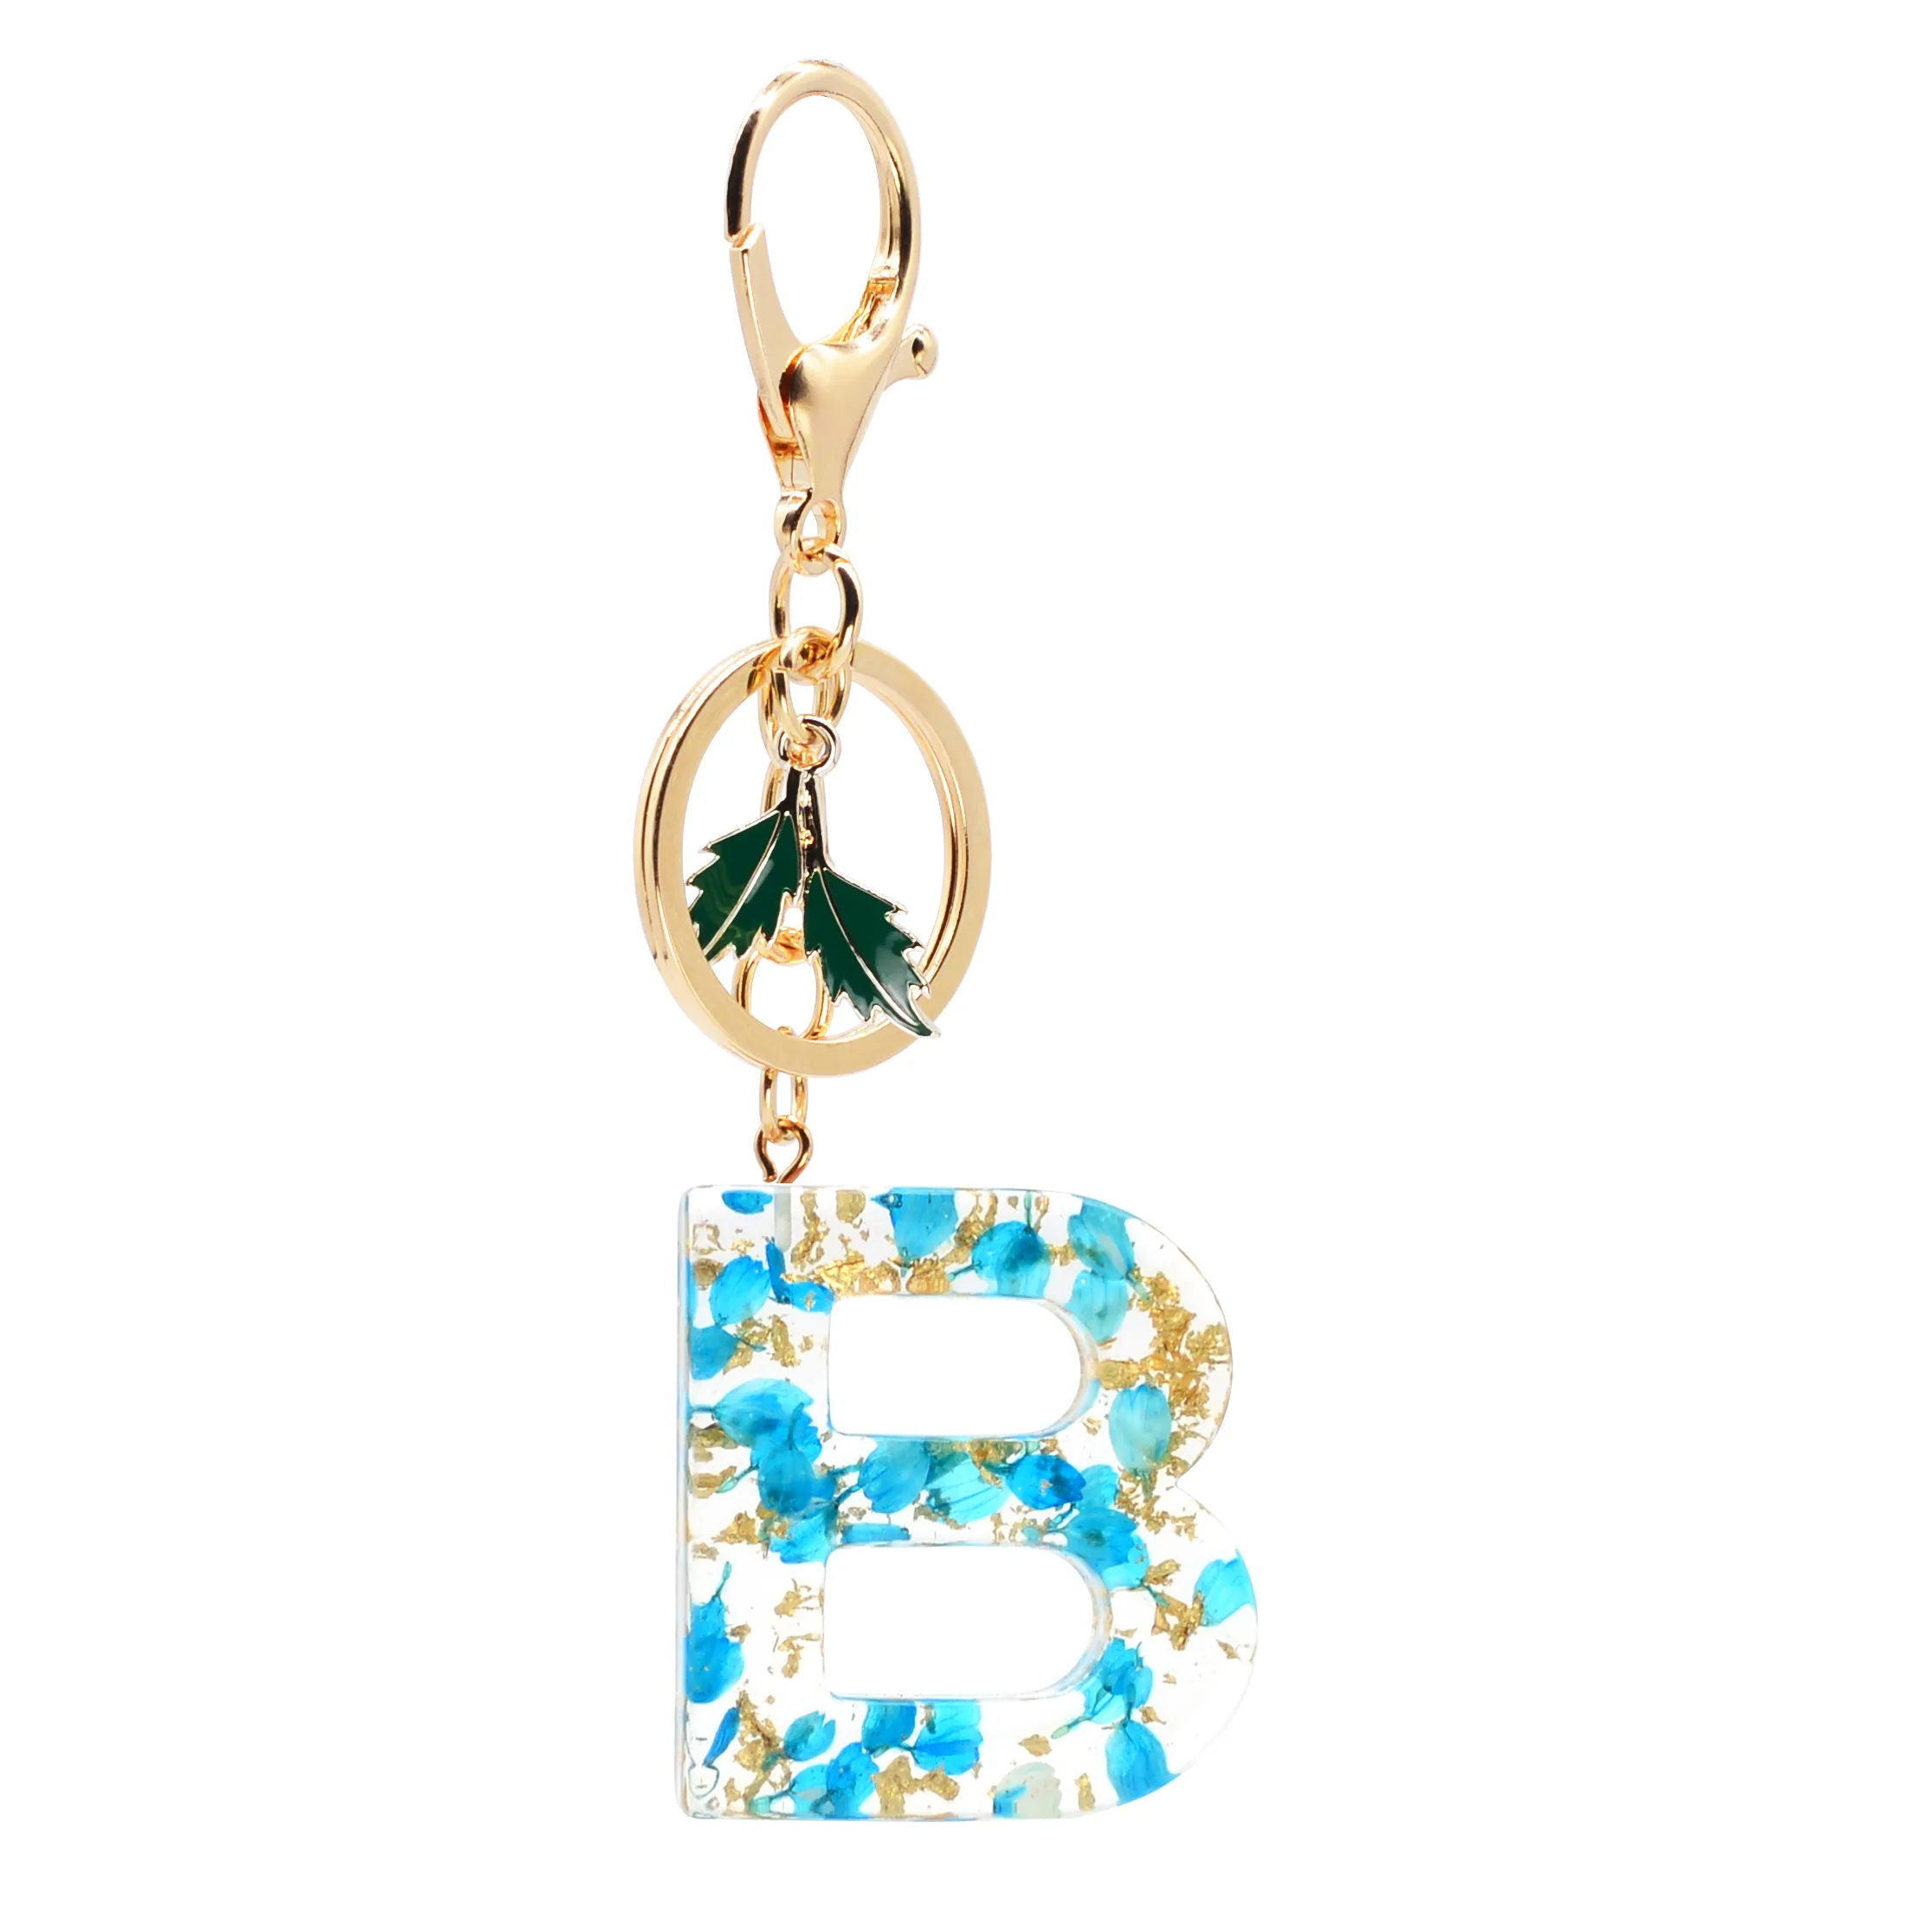 Nuova moda inglese lettera portachiavi in resina piccoli fiori blu con ciondolo a forma di ciondolo in lamina d'oro donna